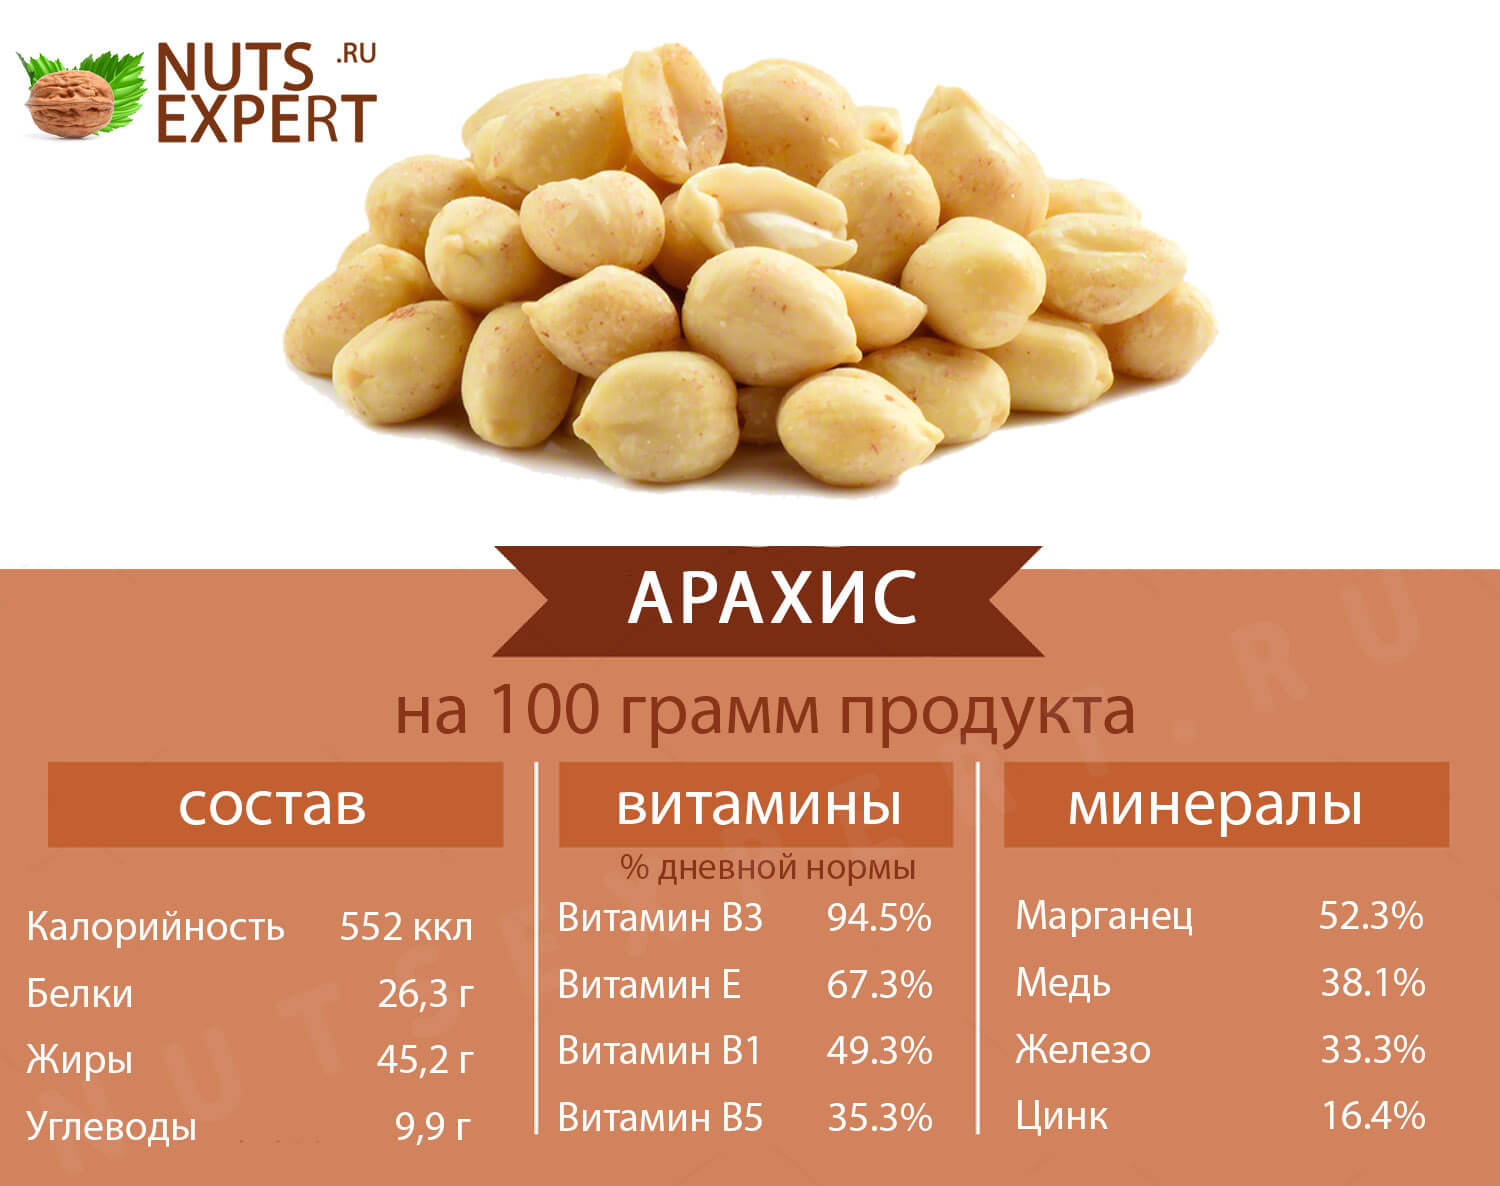 Всё про арахис , его химический состав, пищевая ценность, наличие витаминов и минералов